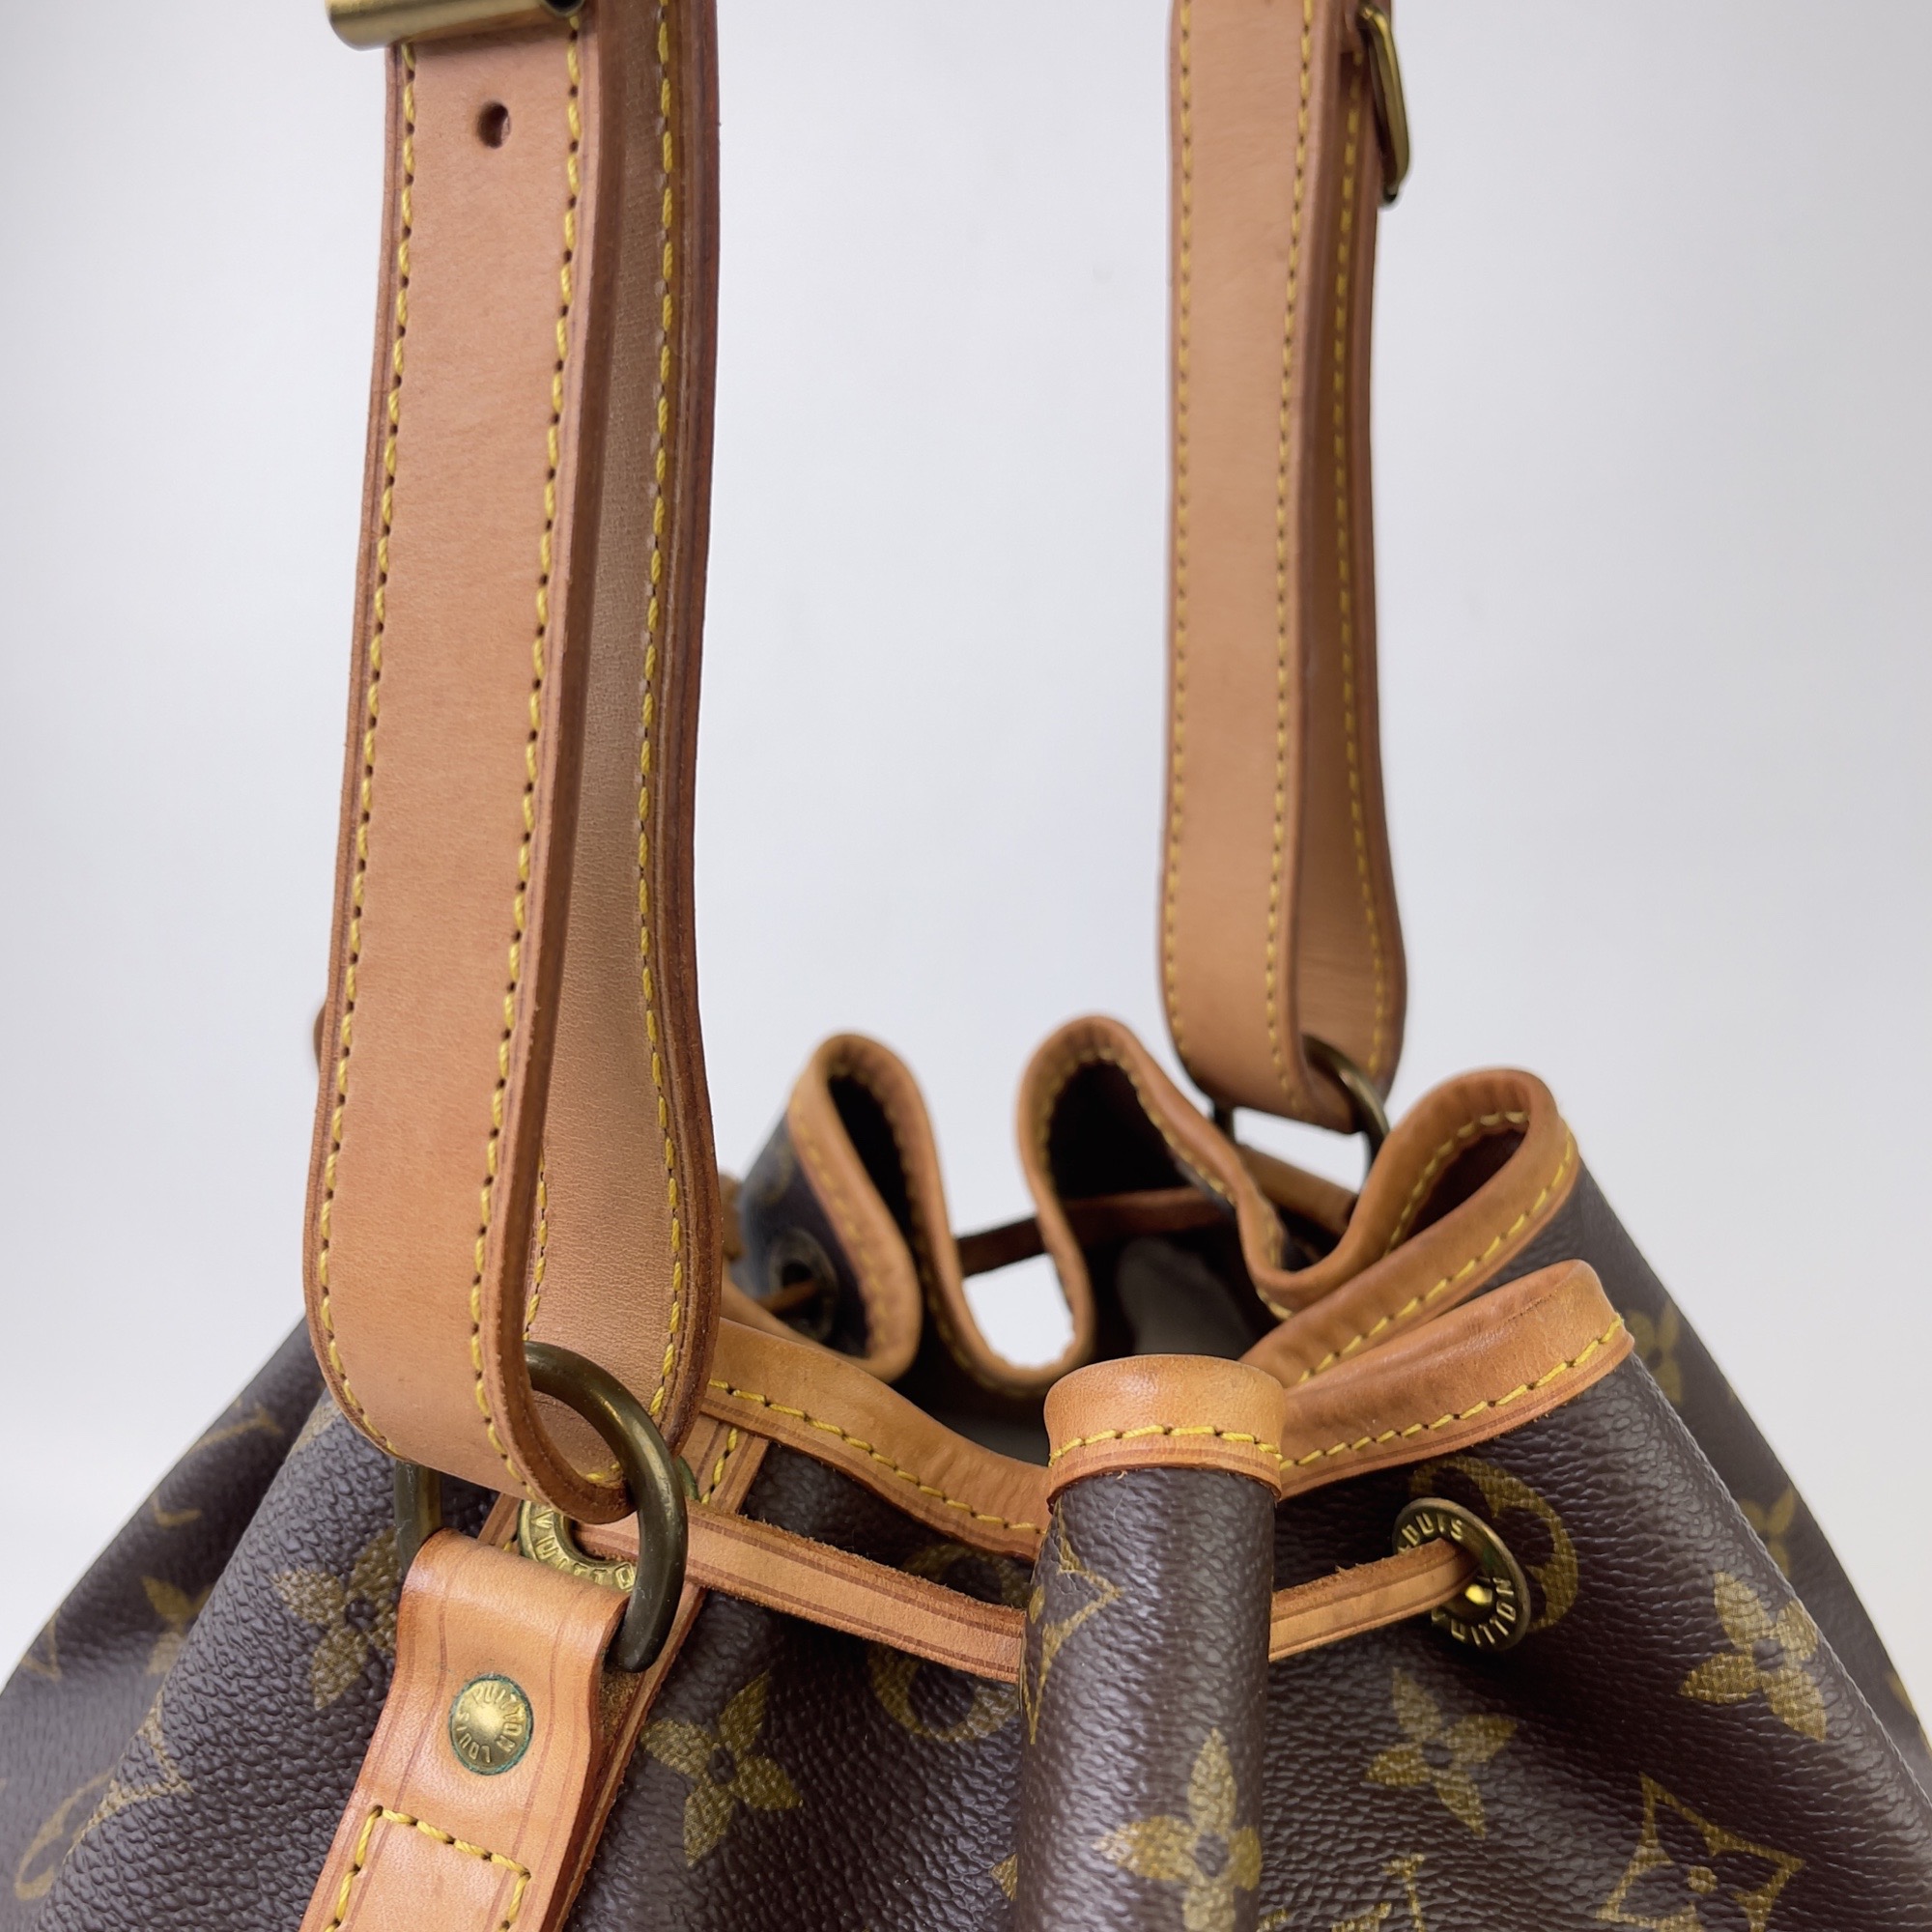 2011 Louis Vuitton Monogram Canvas Noe GM Shoulder Bag at 1stDibs  louis  vuitton bags 2011, 2011 louis vuitton handbags, louis vuitton champagne bag